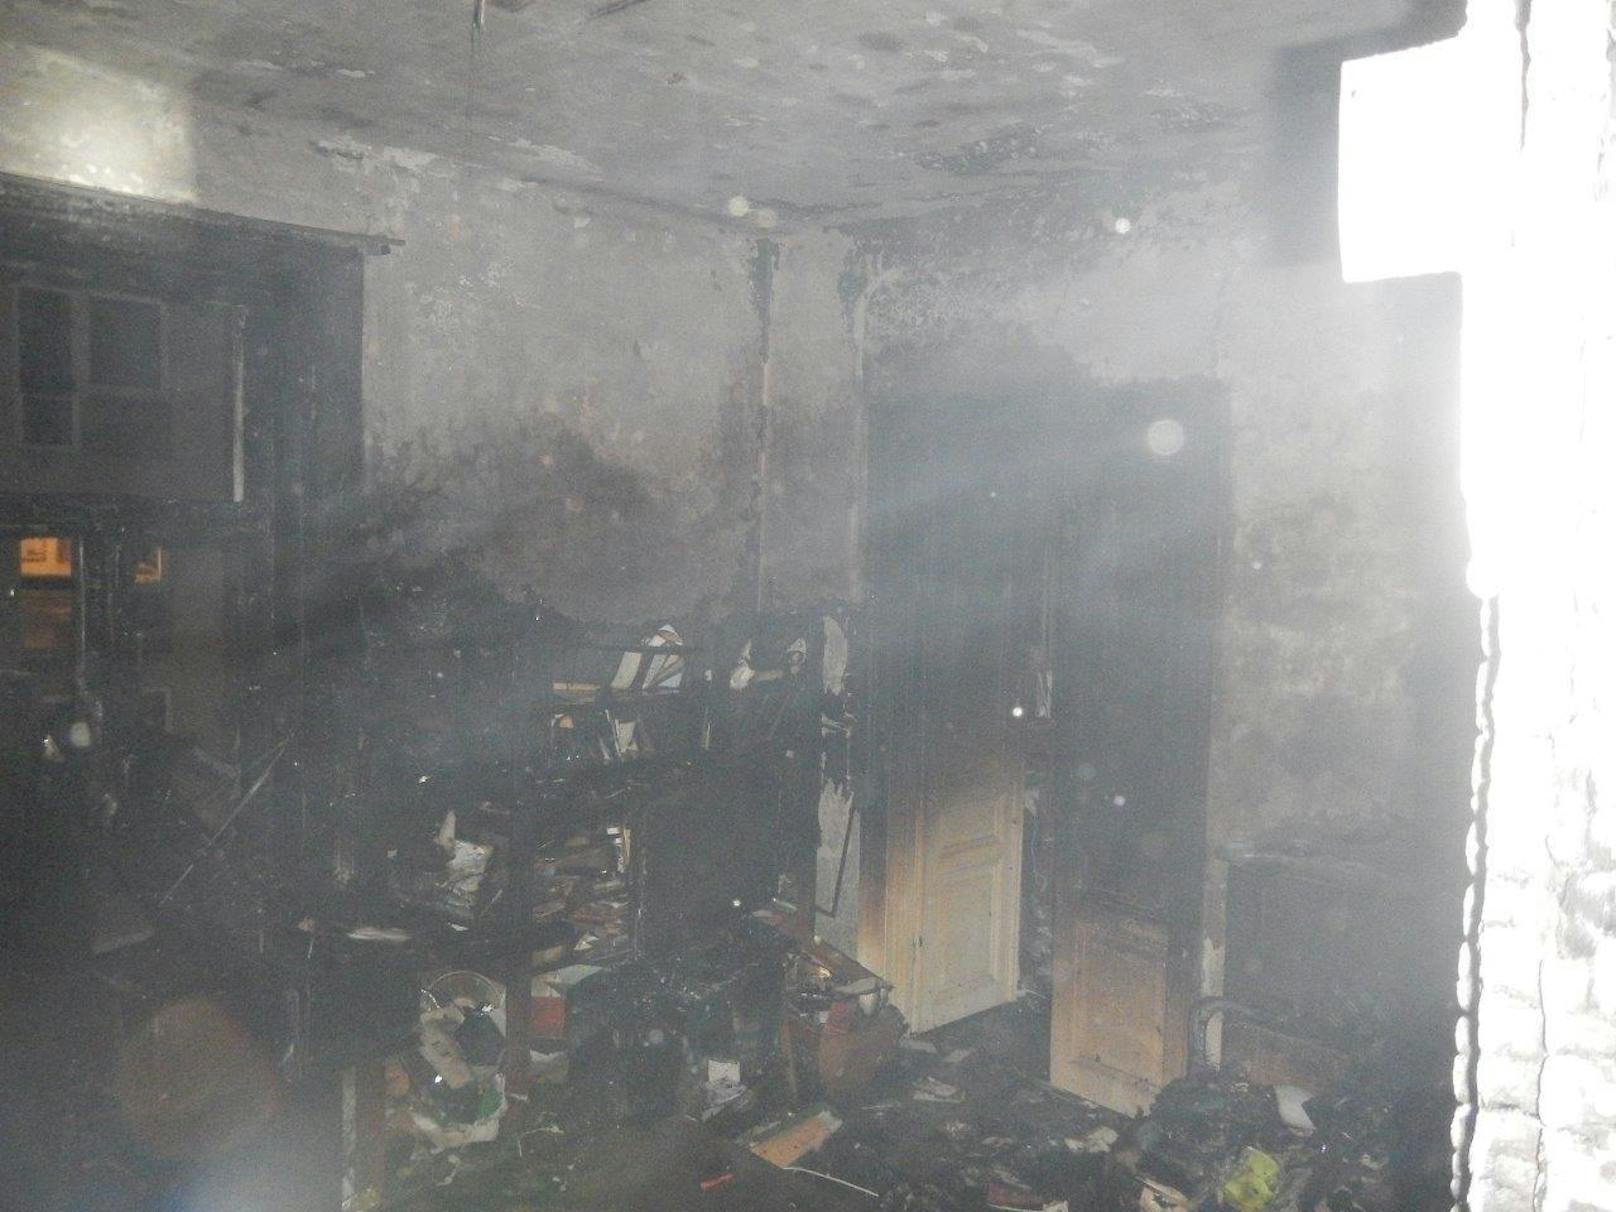 Während der Brandbekämpfung wurde eine leblose Person in der Wohnung vorgefunden, weitere Personen wurden nicht verletzt.